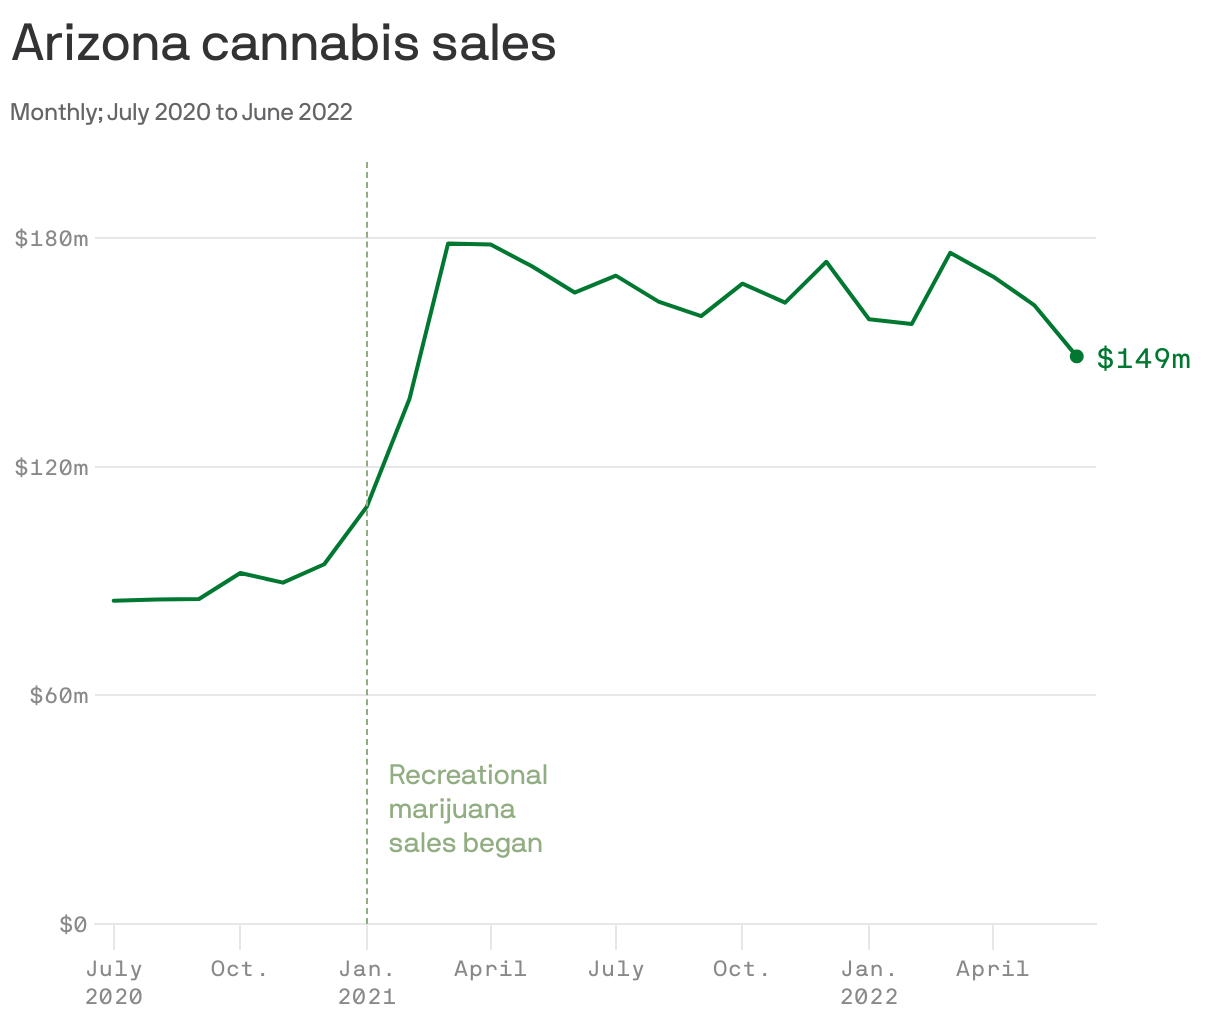 Arizona cannabis sales